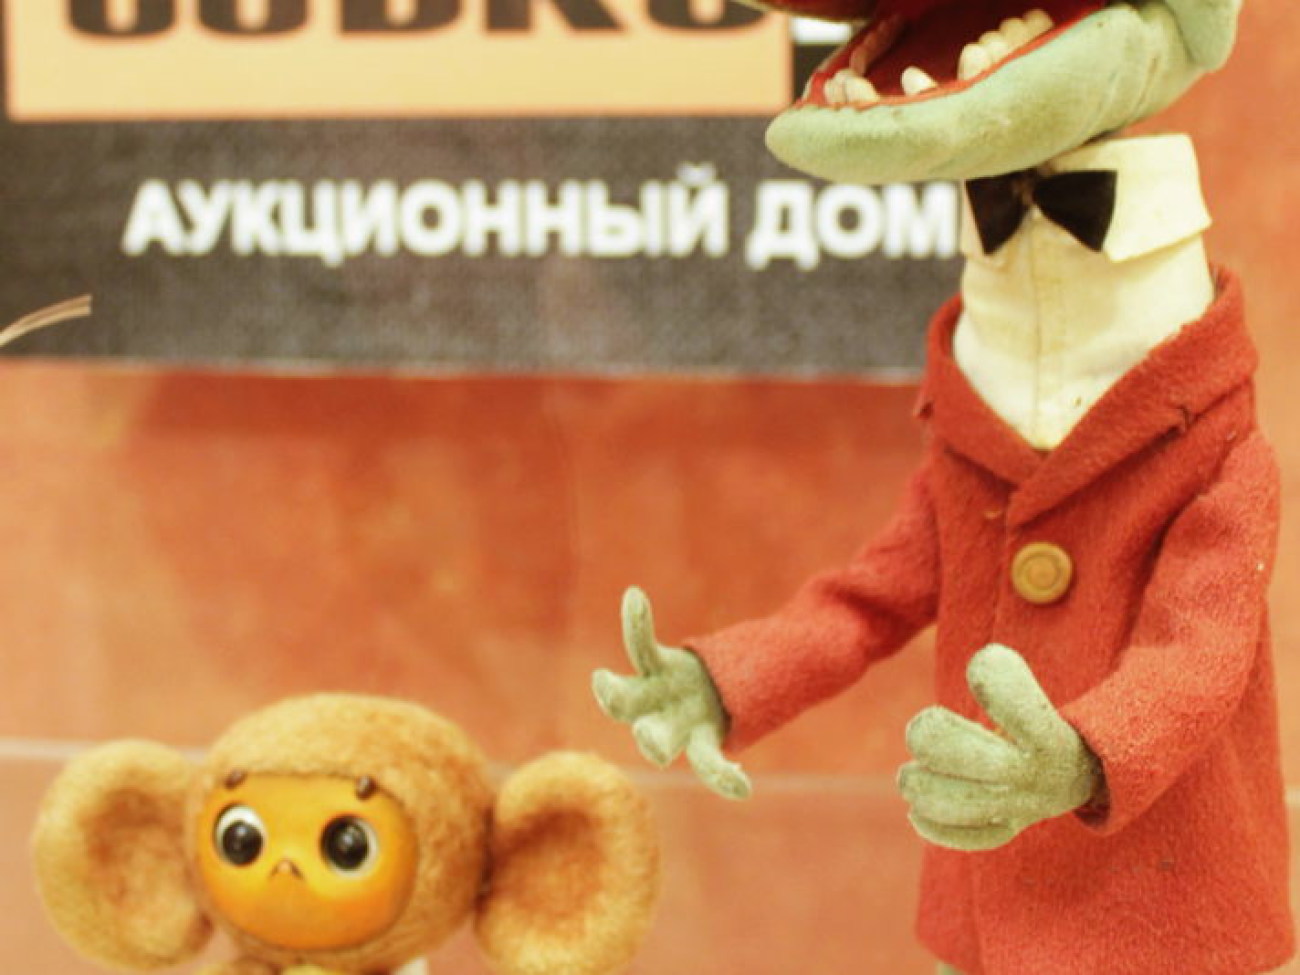 В Москве на торгах продают оригинальных Чебурашку и его друзей, 11 декабря 2012г.